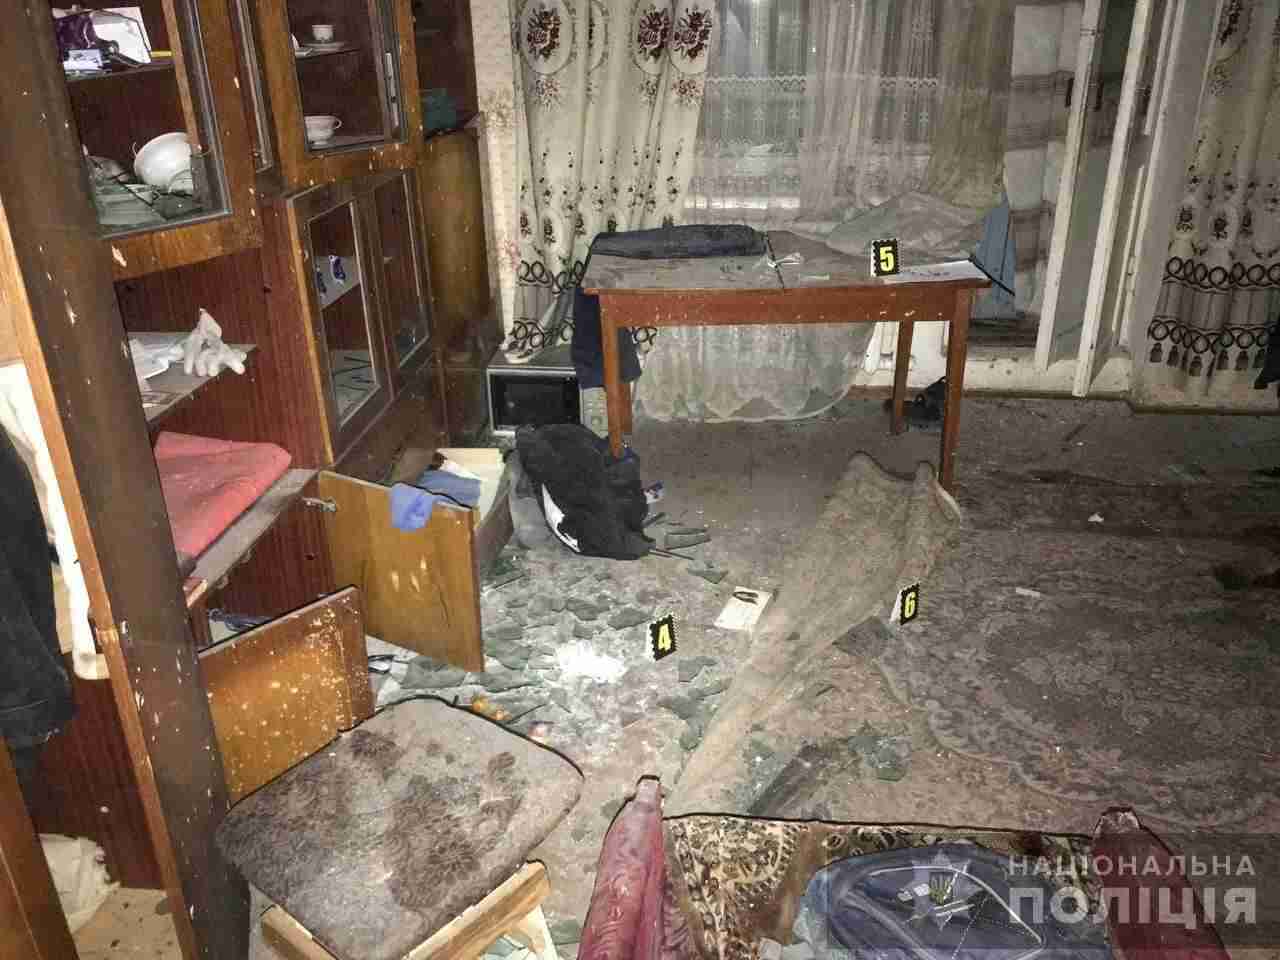 Посварився з рідними: у Славуті чоловік підірвав бойову гранату в квартирі (ФОТО)